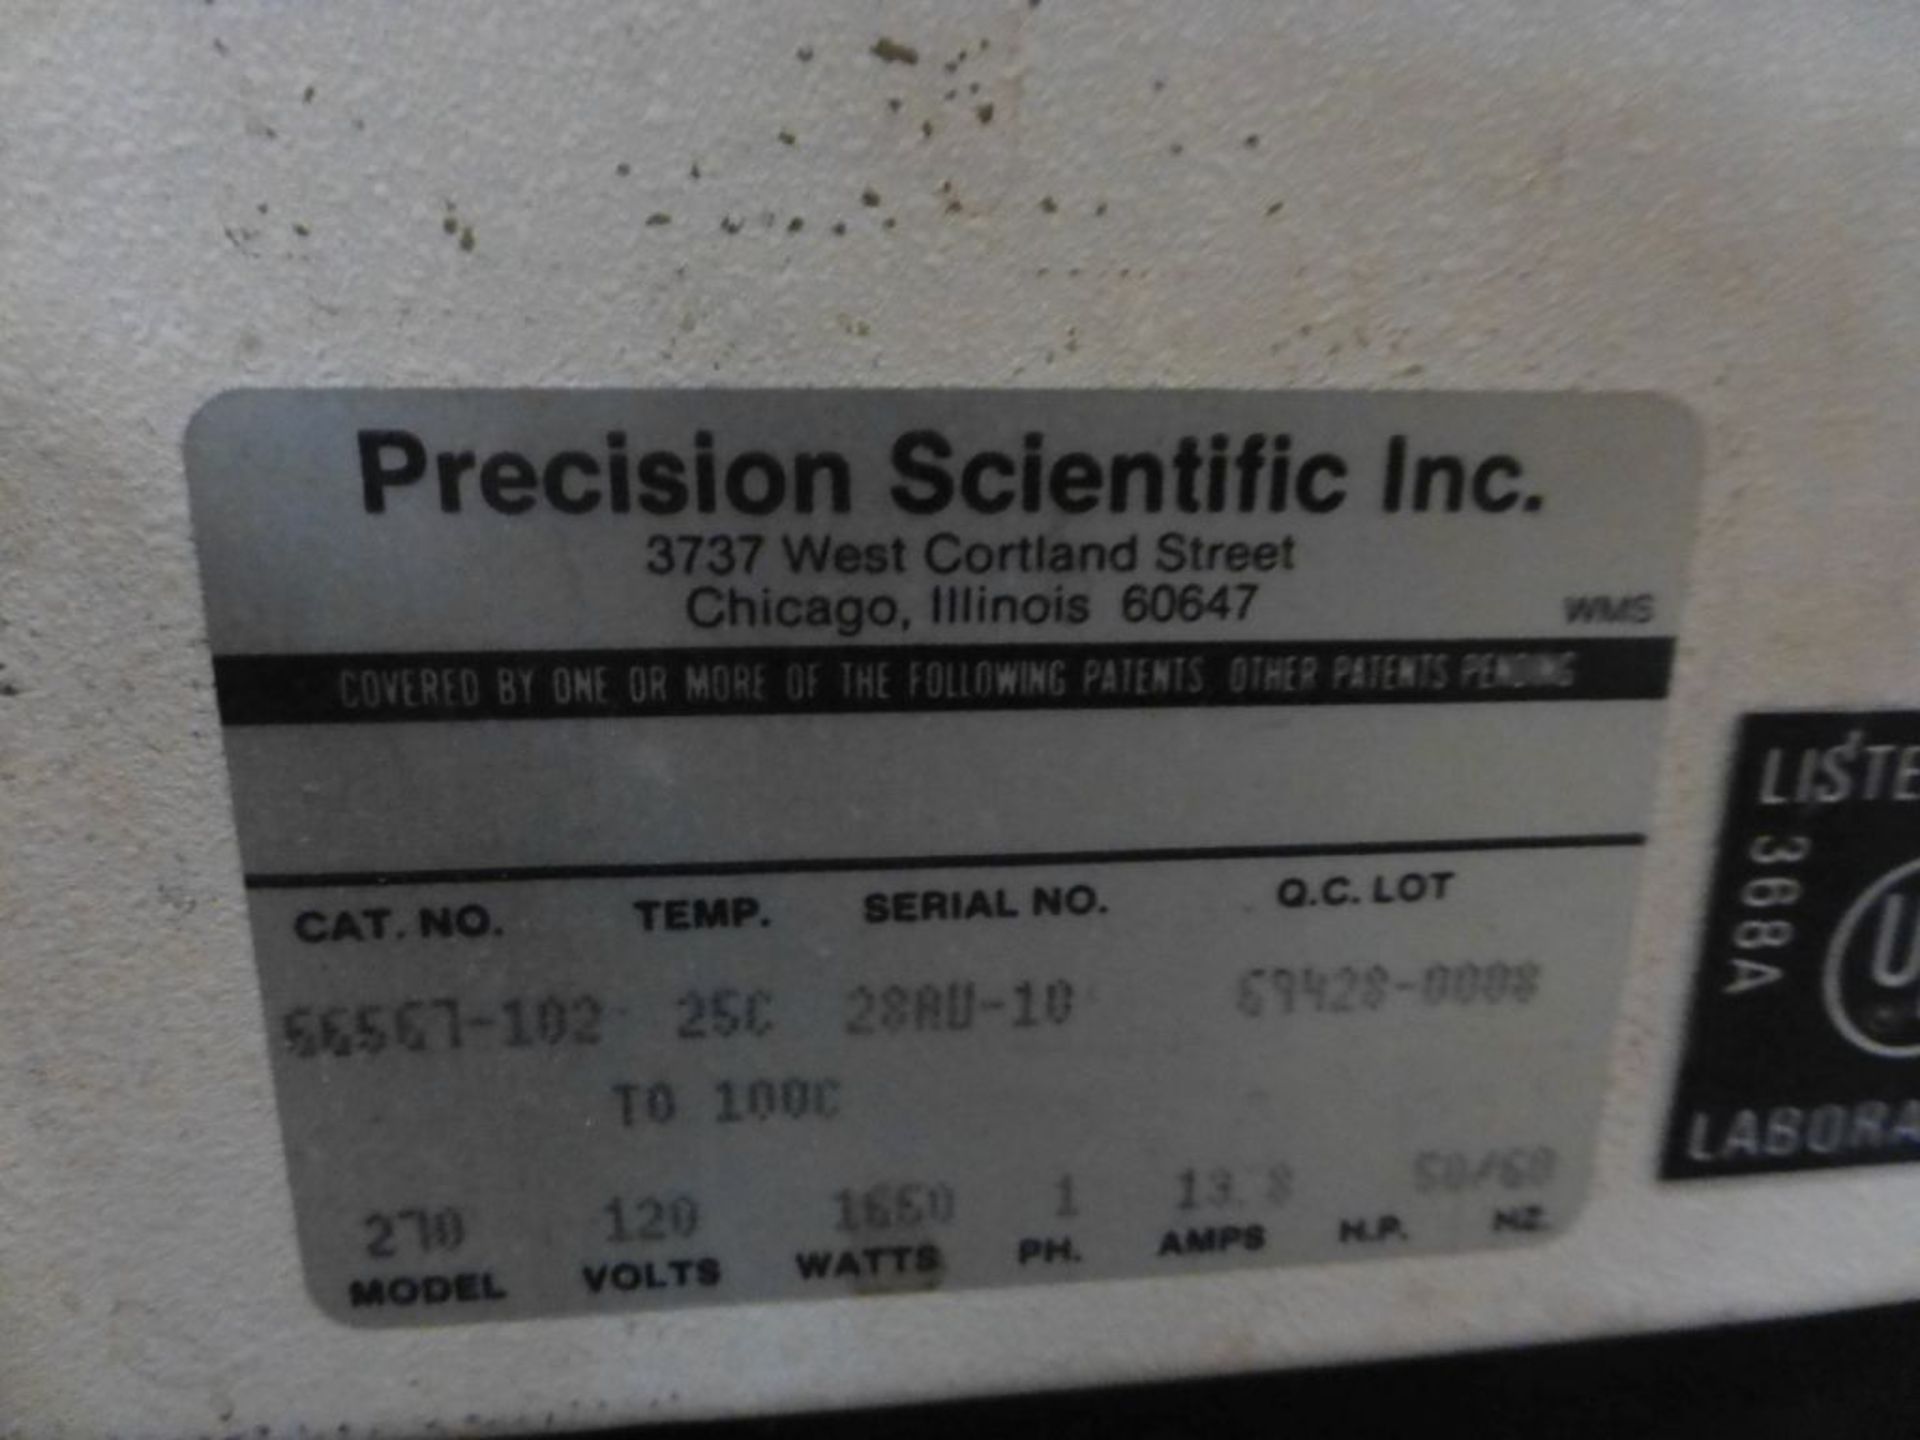 Precision Scientific Inc. Oil Bath|Cat No. 66567-102; Model No. 270; 120V; 1650W; 1PH - Image 7 of 8